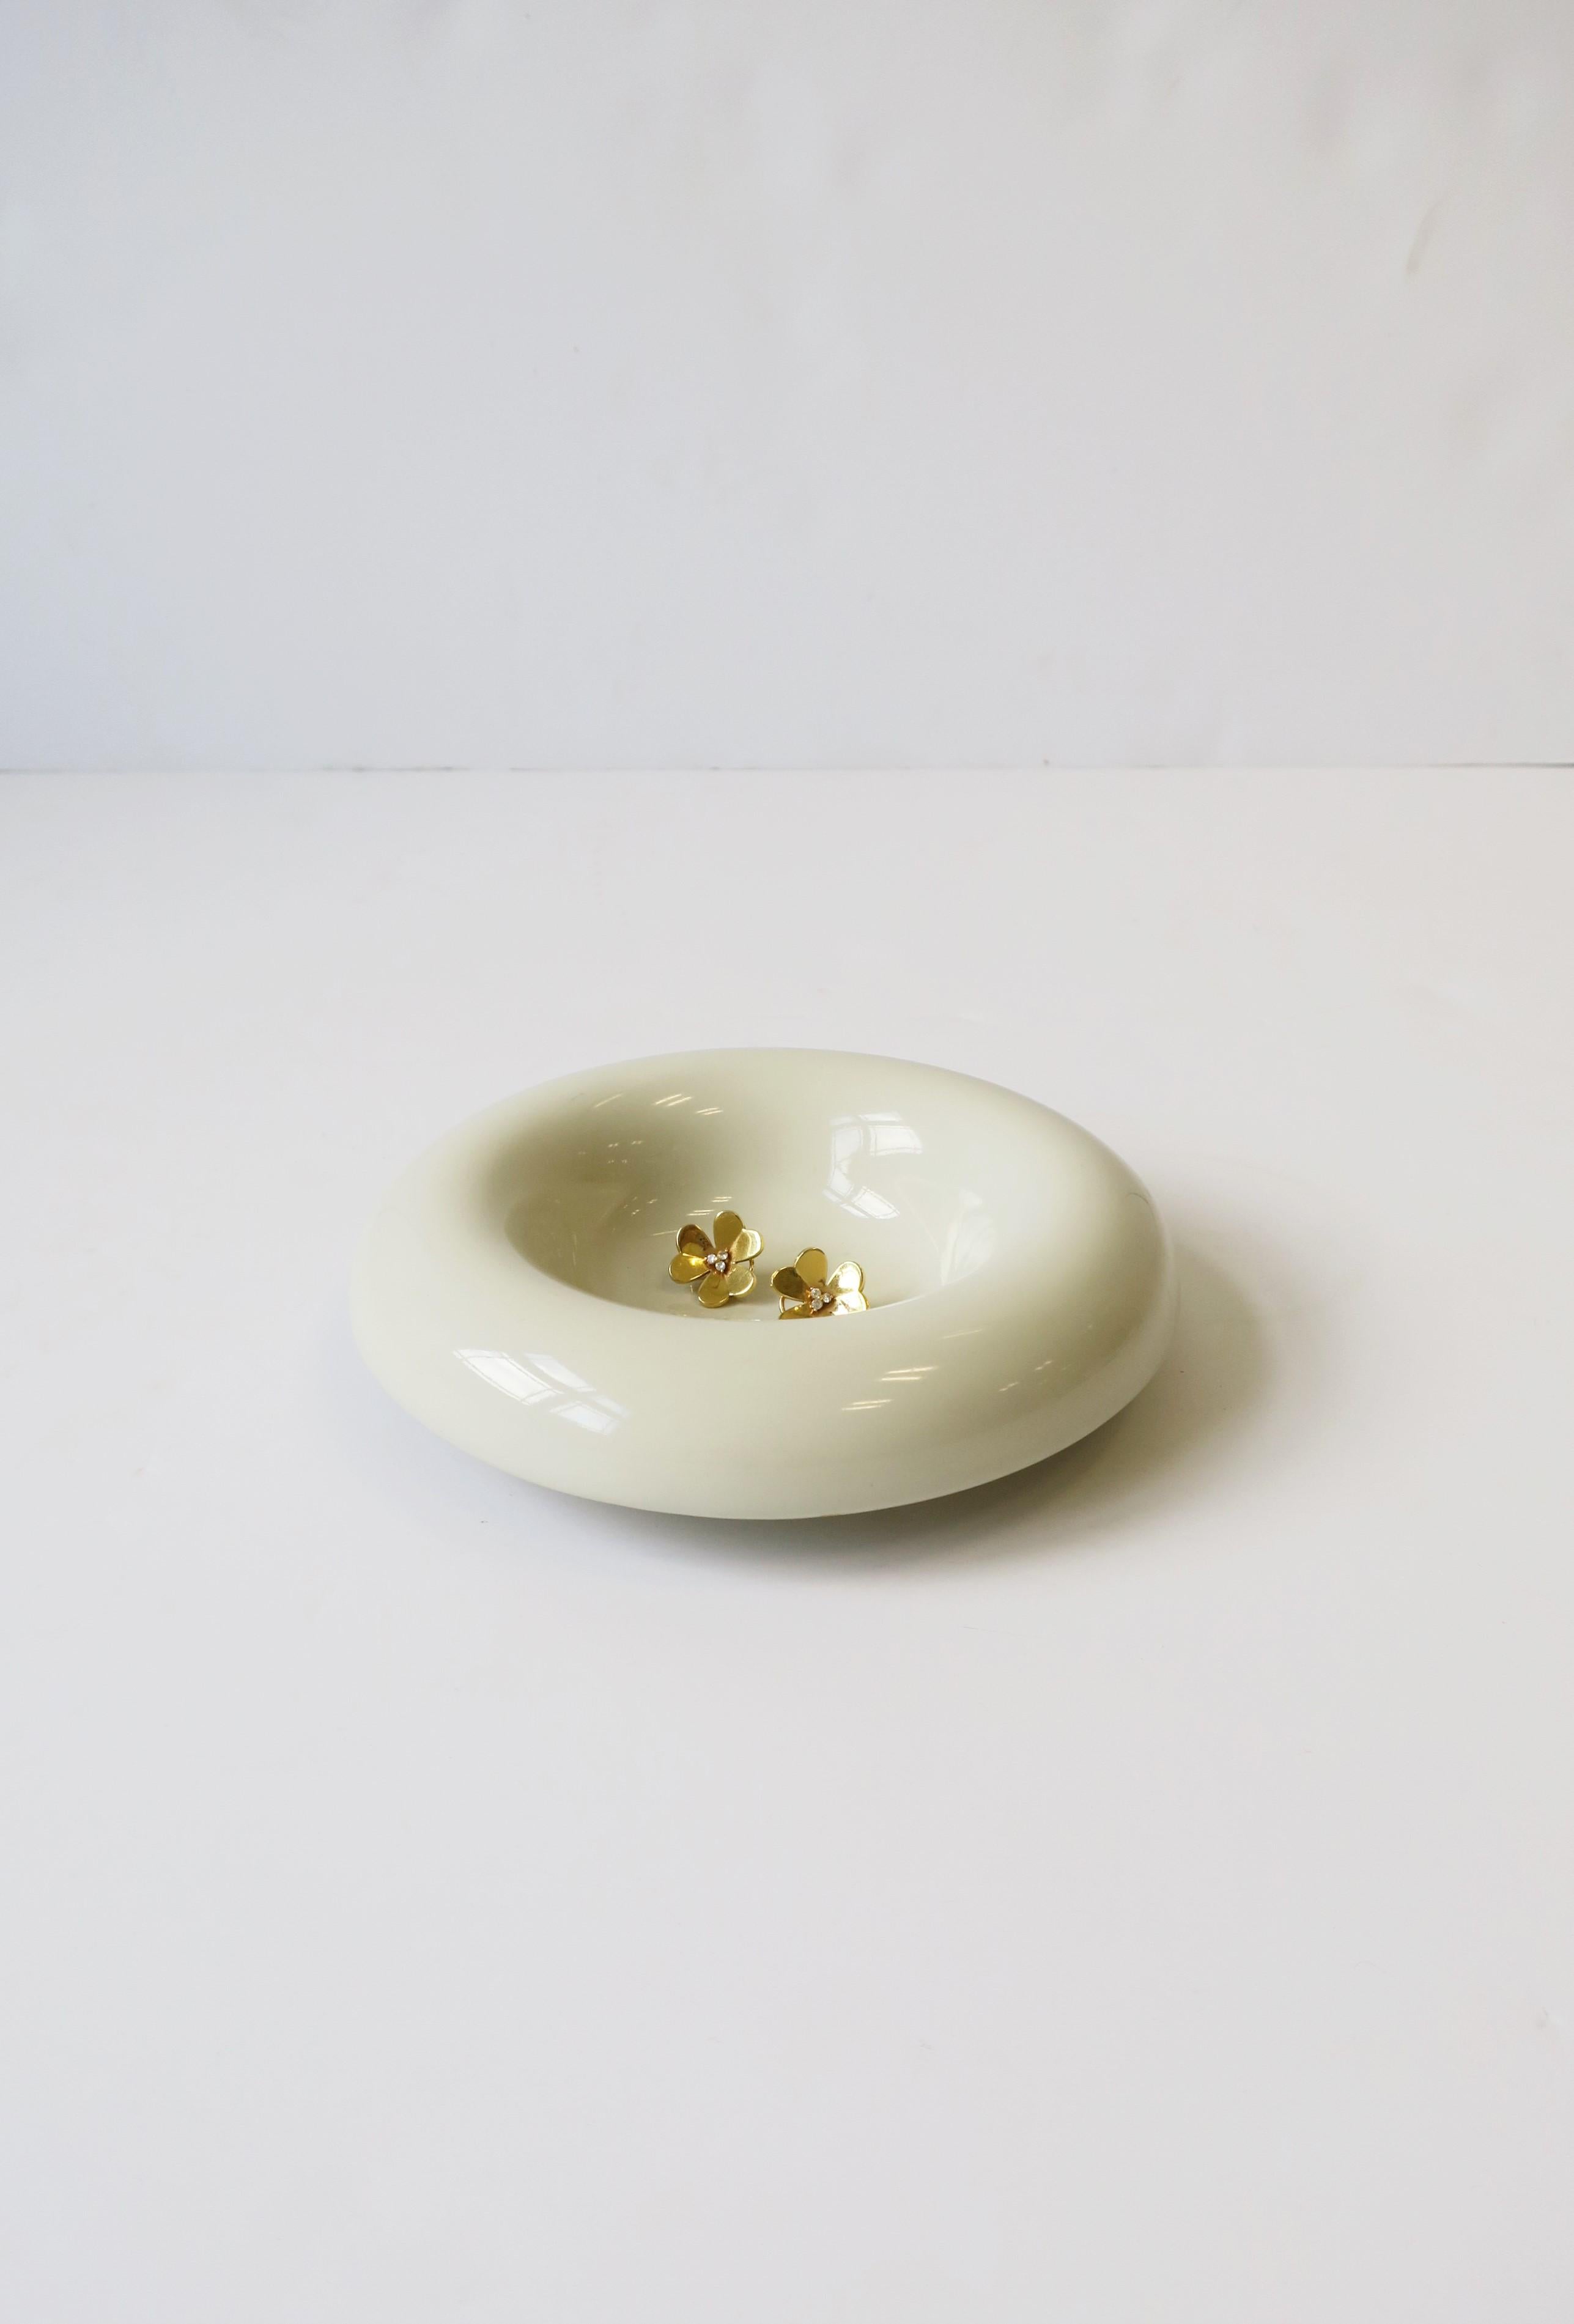 Glazed Postmodern Ceramic Bowl, ca. 1980s For Sale